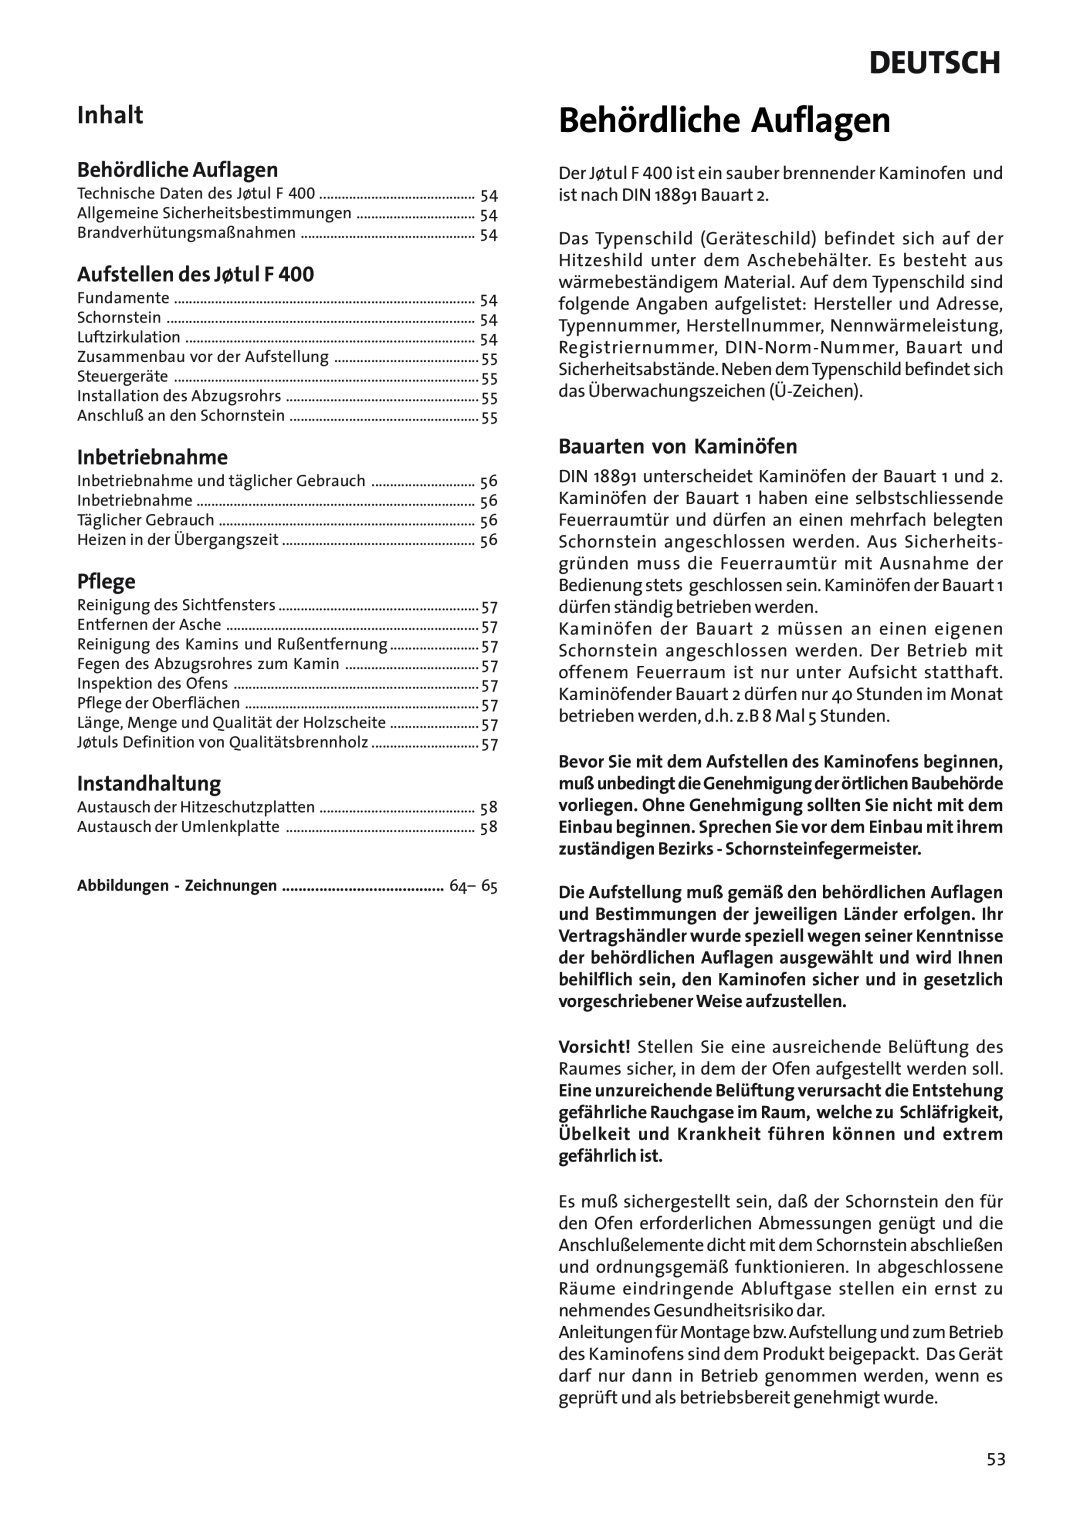 Jotul Woodstove F 400 manual Behördliche Auflagen, Deutsch, Inhalt, Aufstellen des Jøtul F, Inbetriebnahme, Pflege 